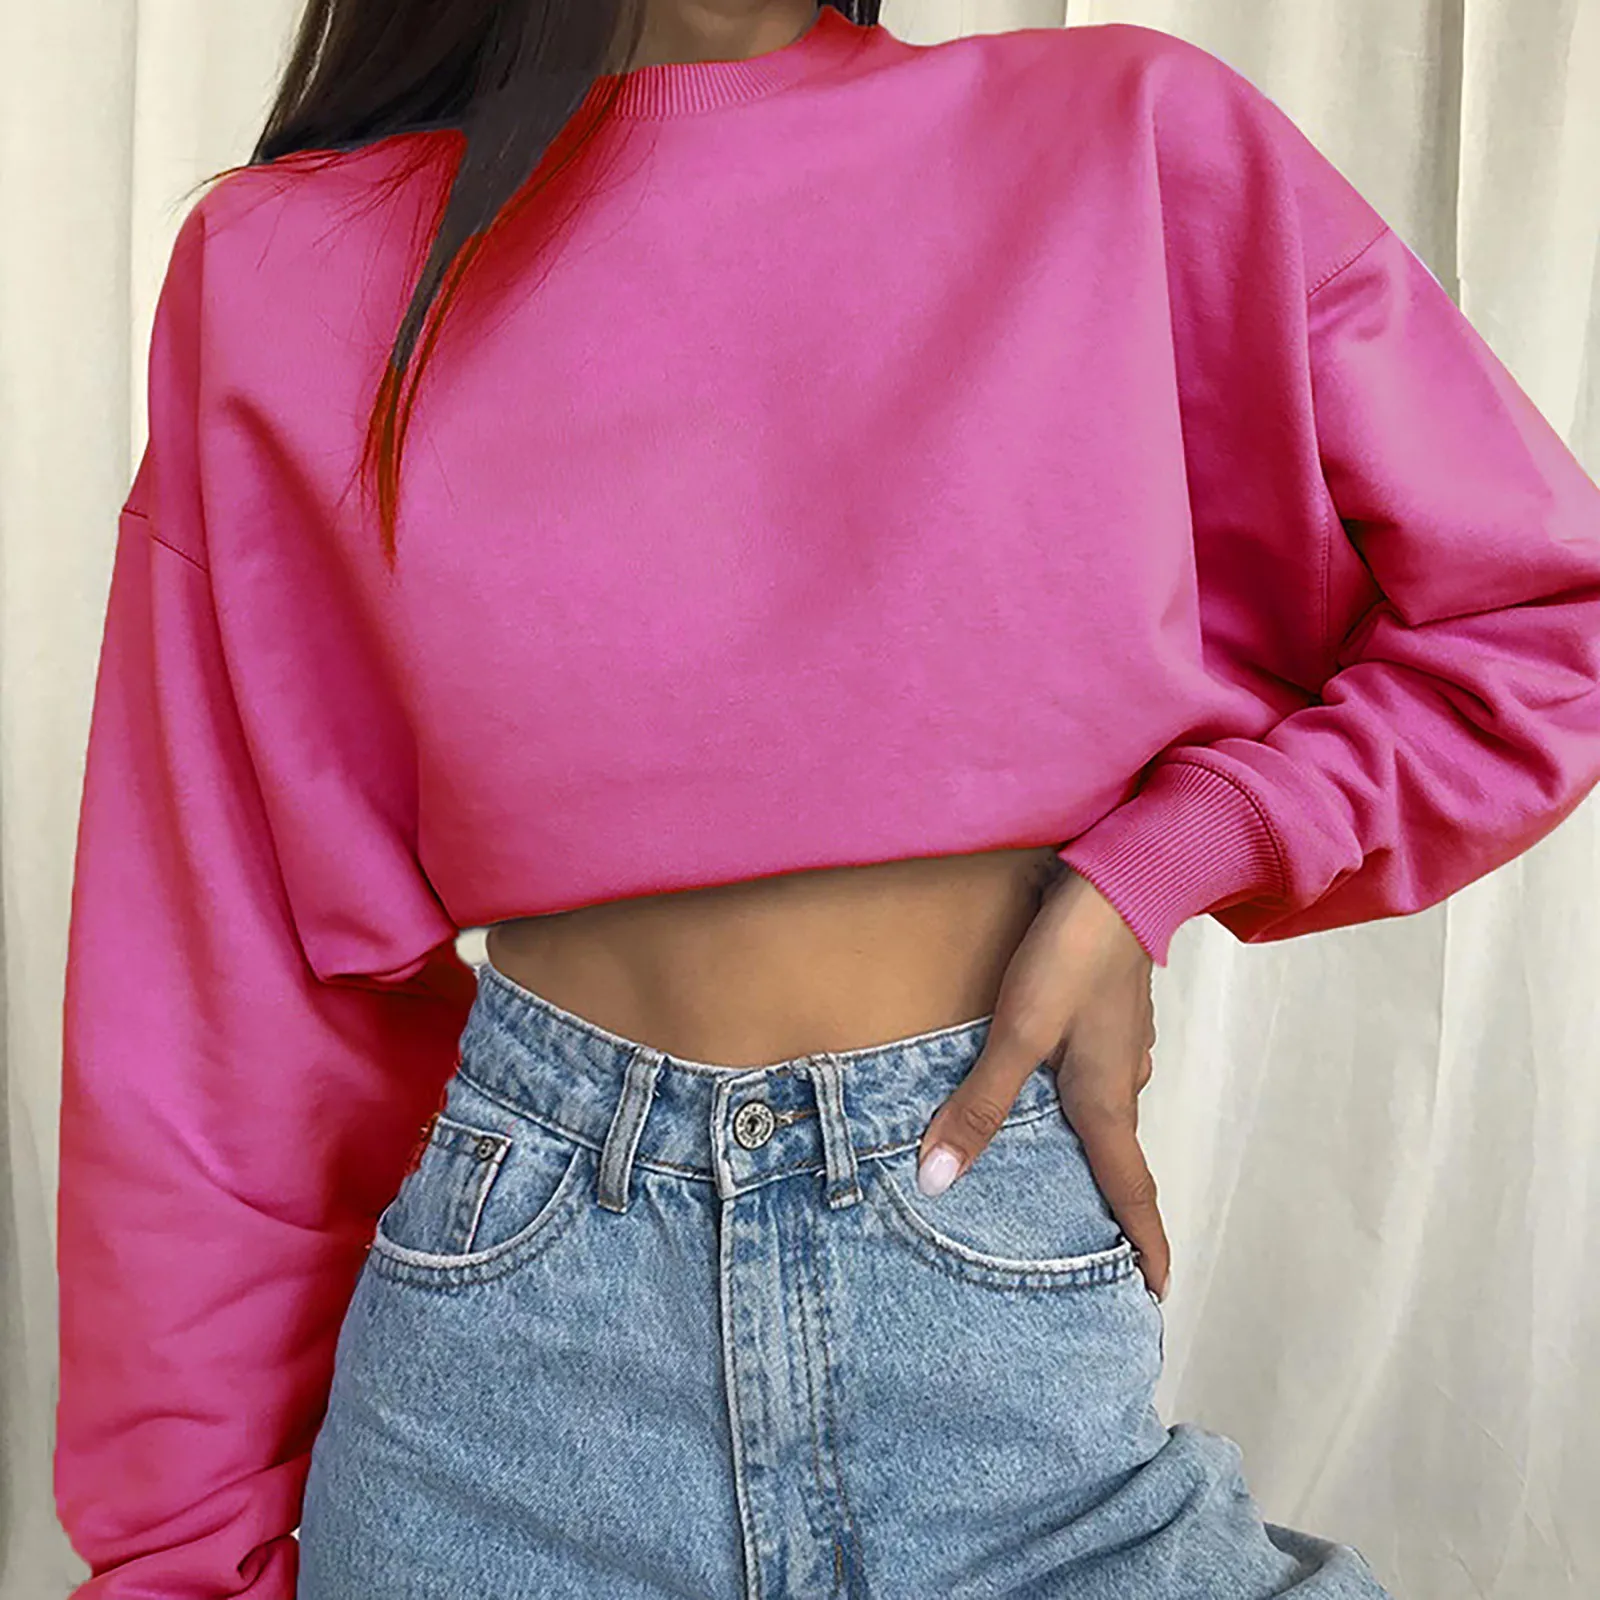 Solid Color Women'S Hoodies Oversize Pink Tank Top Slim Sweatshirt Short Korean Crewneck Crop Tops Autumn All-Match Blouses